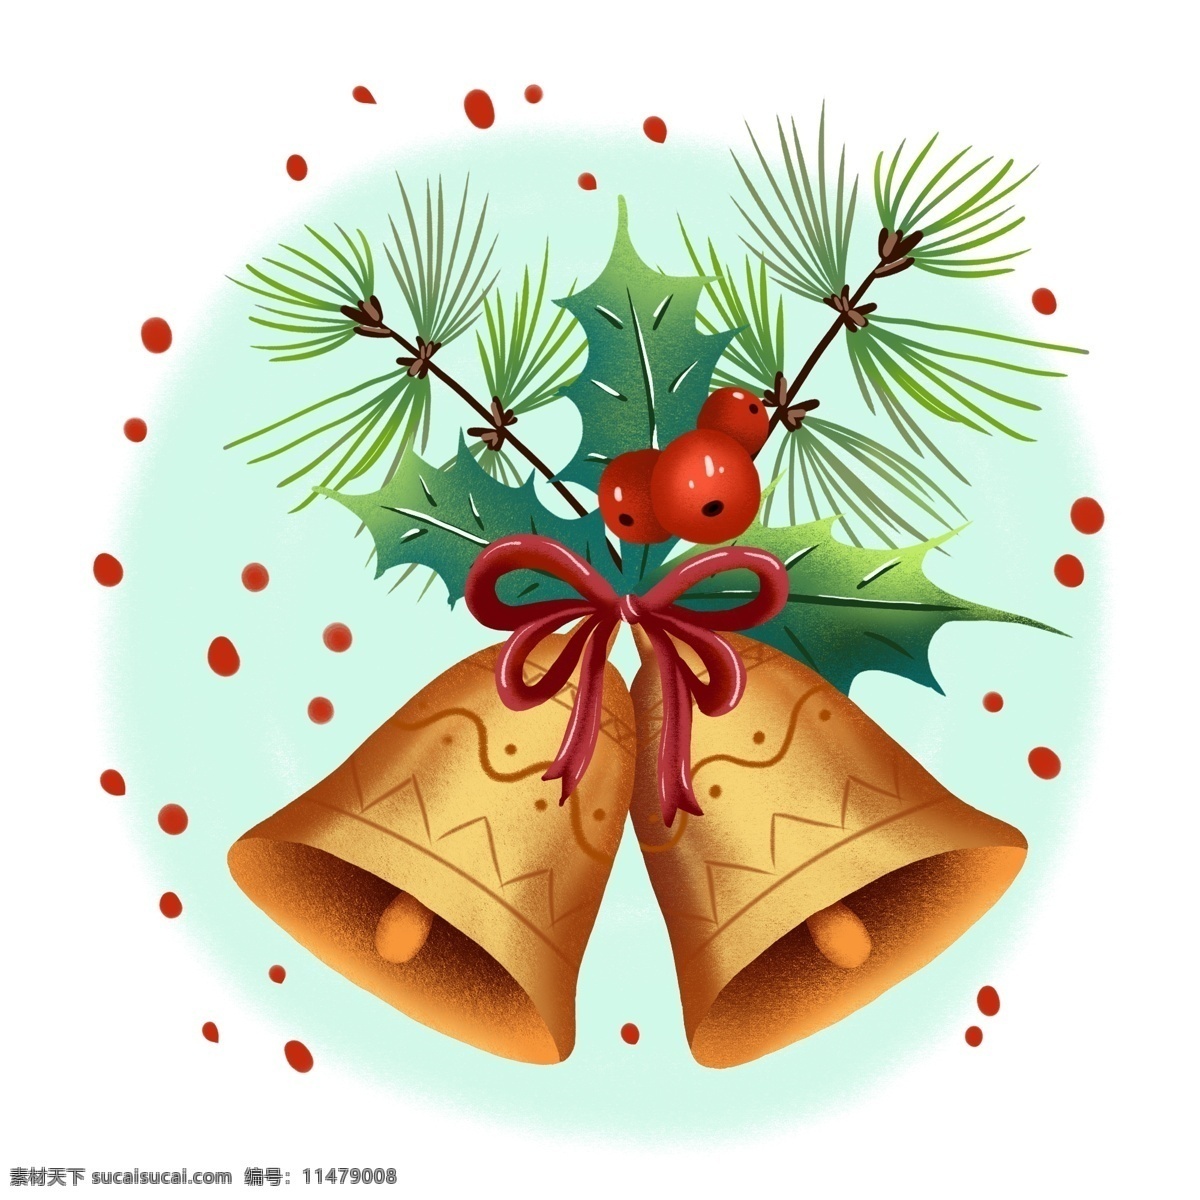 圣诞 铃铛 手绘 节日 插画 商用 元素 圣诞节 圣诞节元素 圣诞铃铛 金铃铛 金色 风 ps 分层